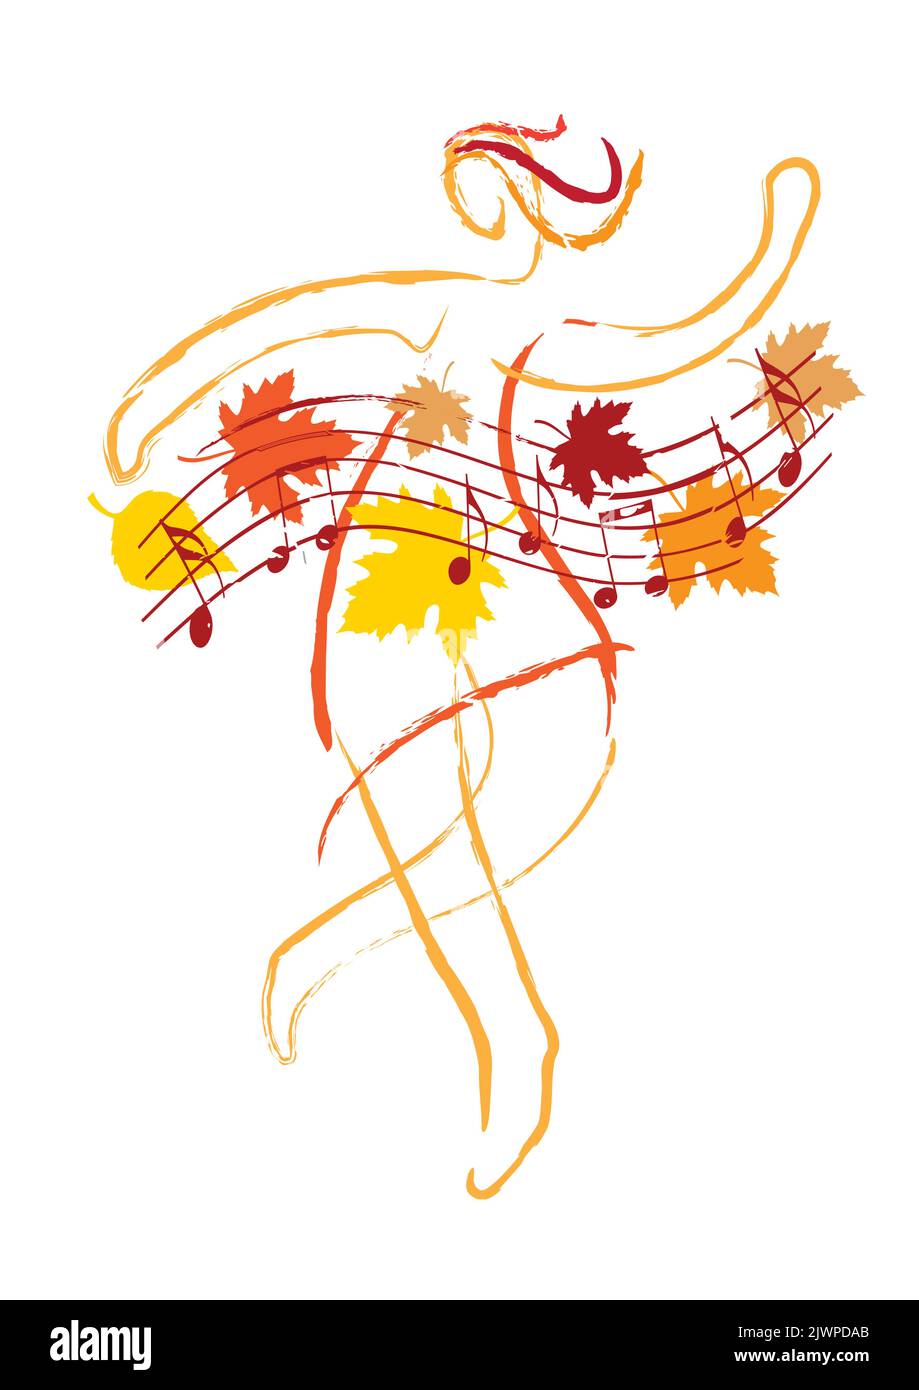 Herbst Tanz, schöne tanzende Mädchen. Ausdrucksstarke, stilisierte Linienkunst-Illustration einer tanzenden jungen Frau mit welligen Musiknoten und Herbstblättern. Stock Vektor